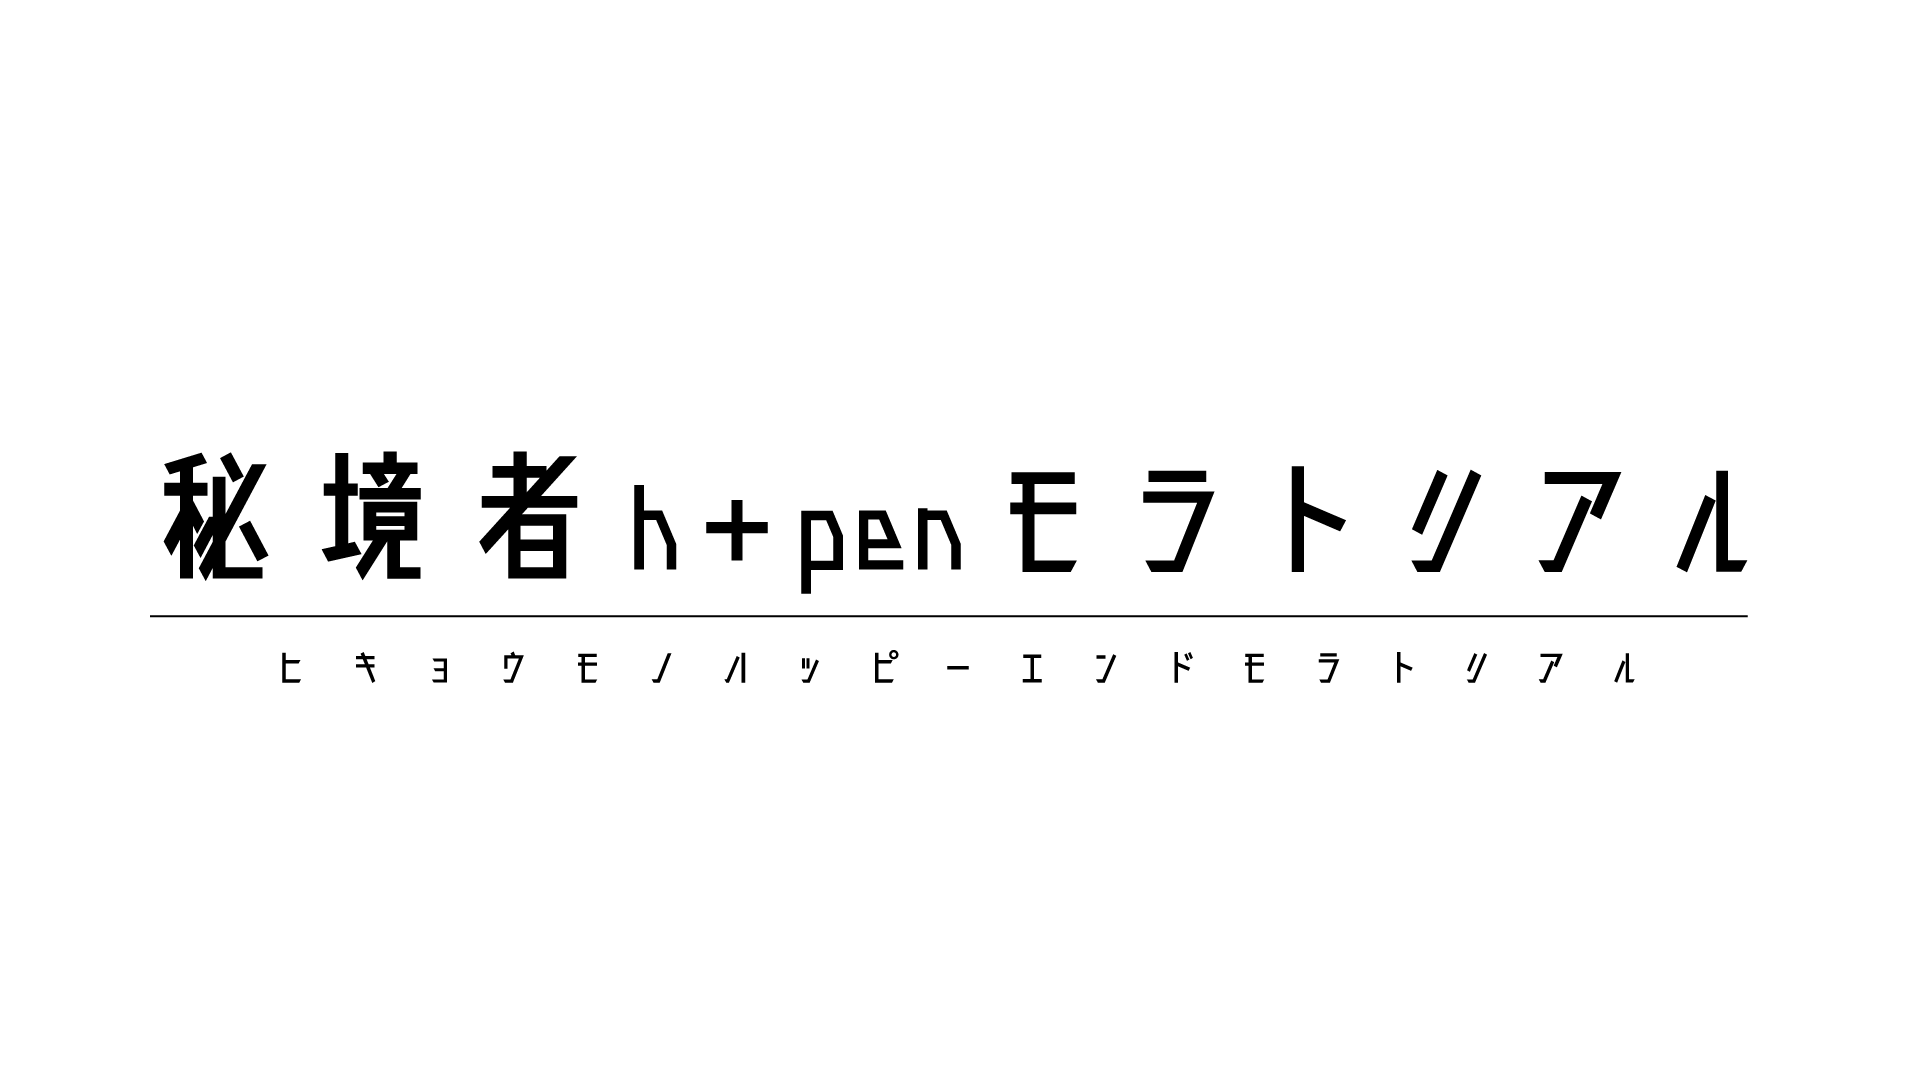 ハピエン（秘境者h+penモラトリアル）